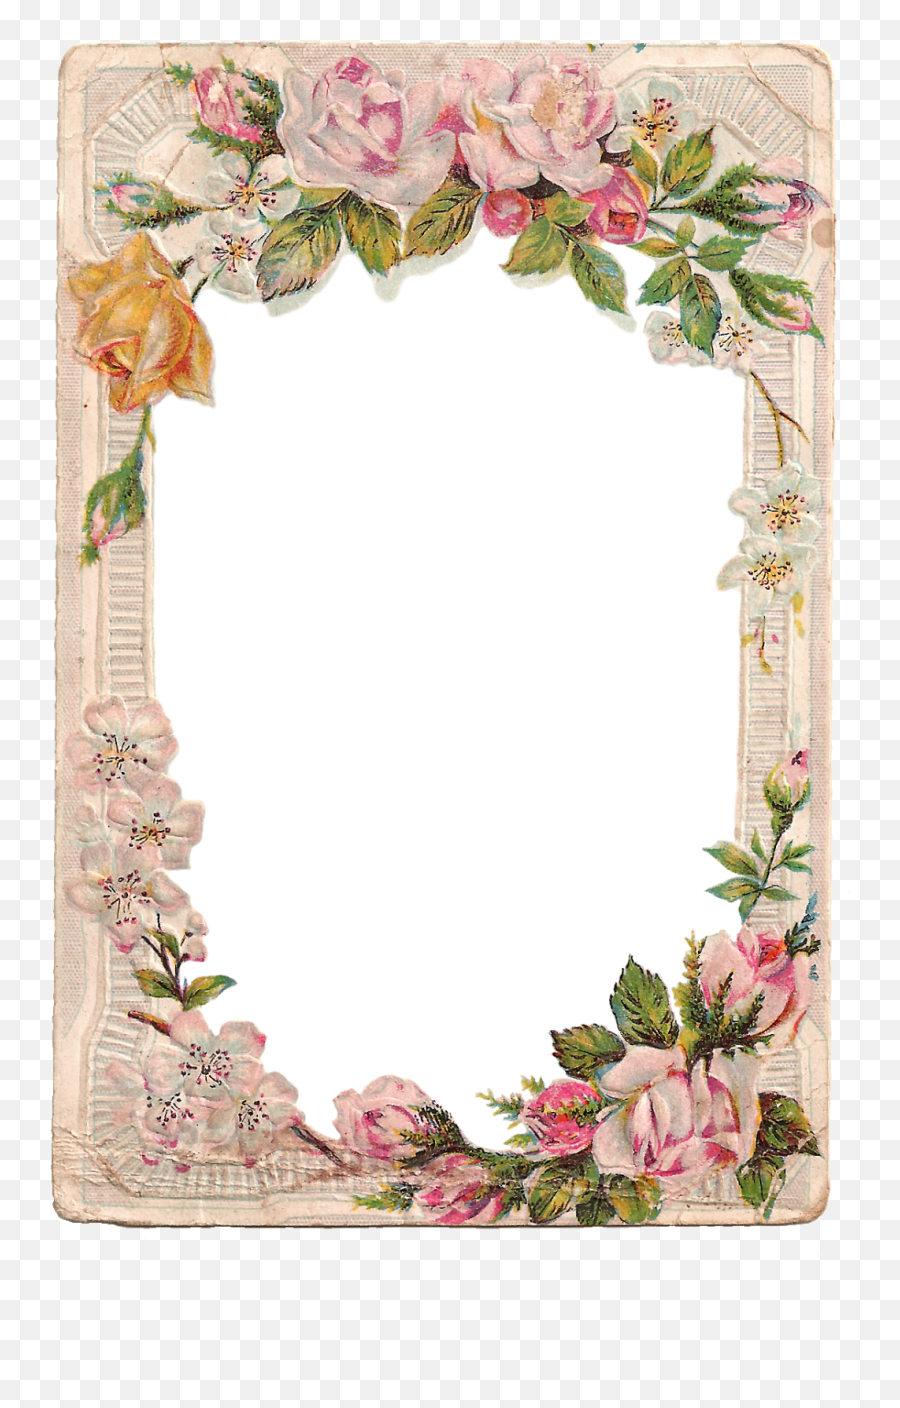 Free Vintage Digital Flower Frame With Roses And Dogwood - Frame Flower ...